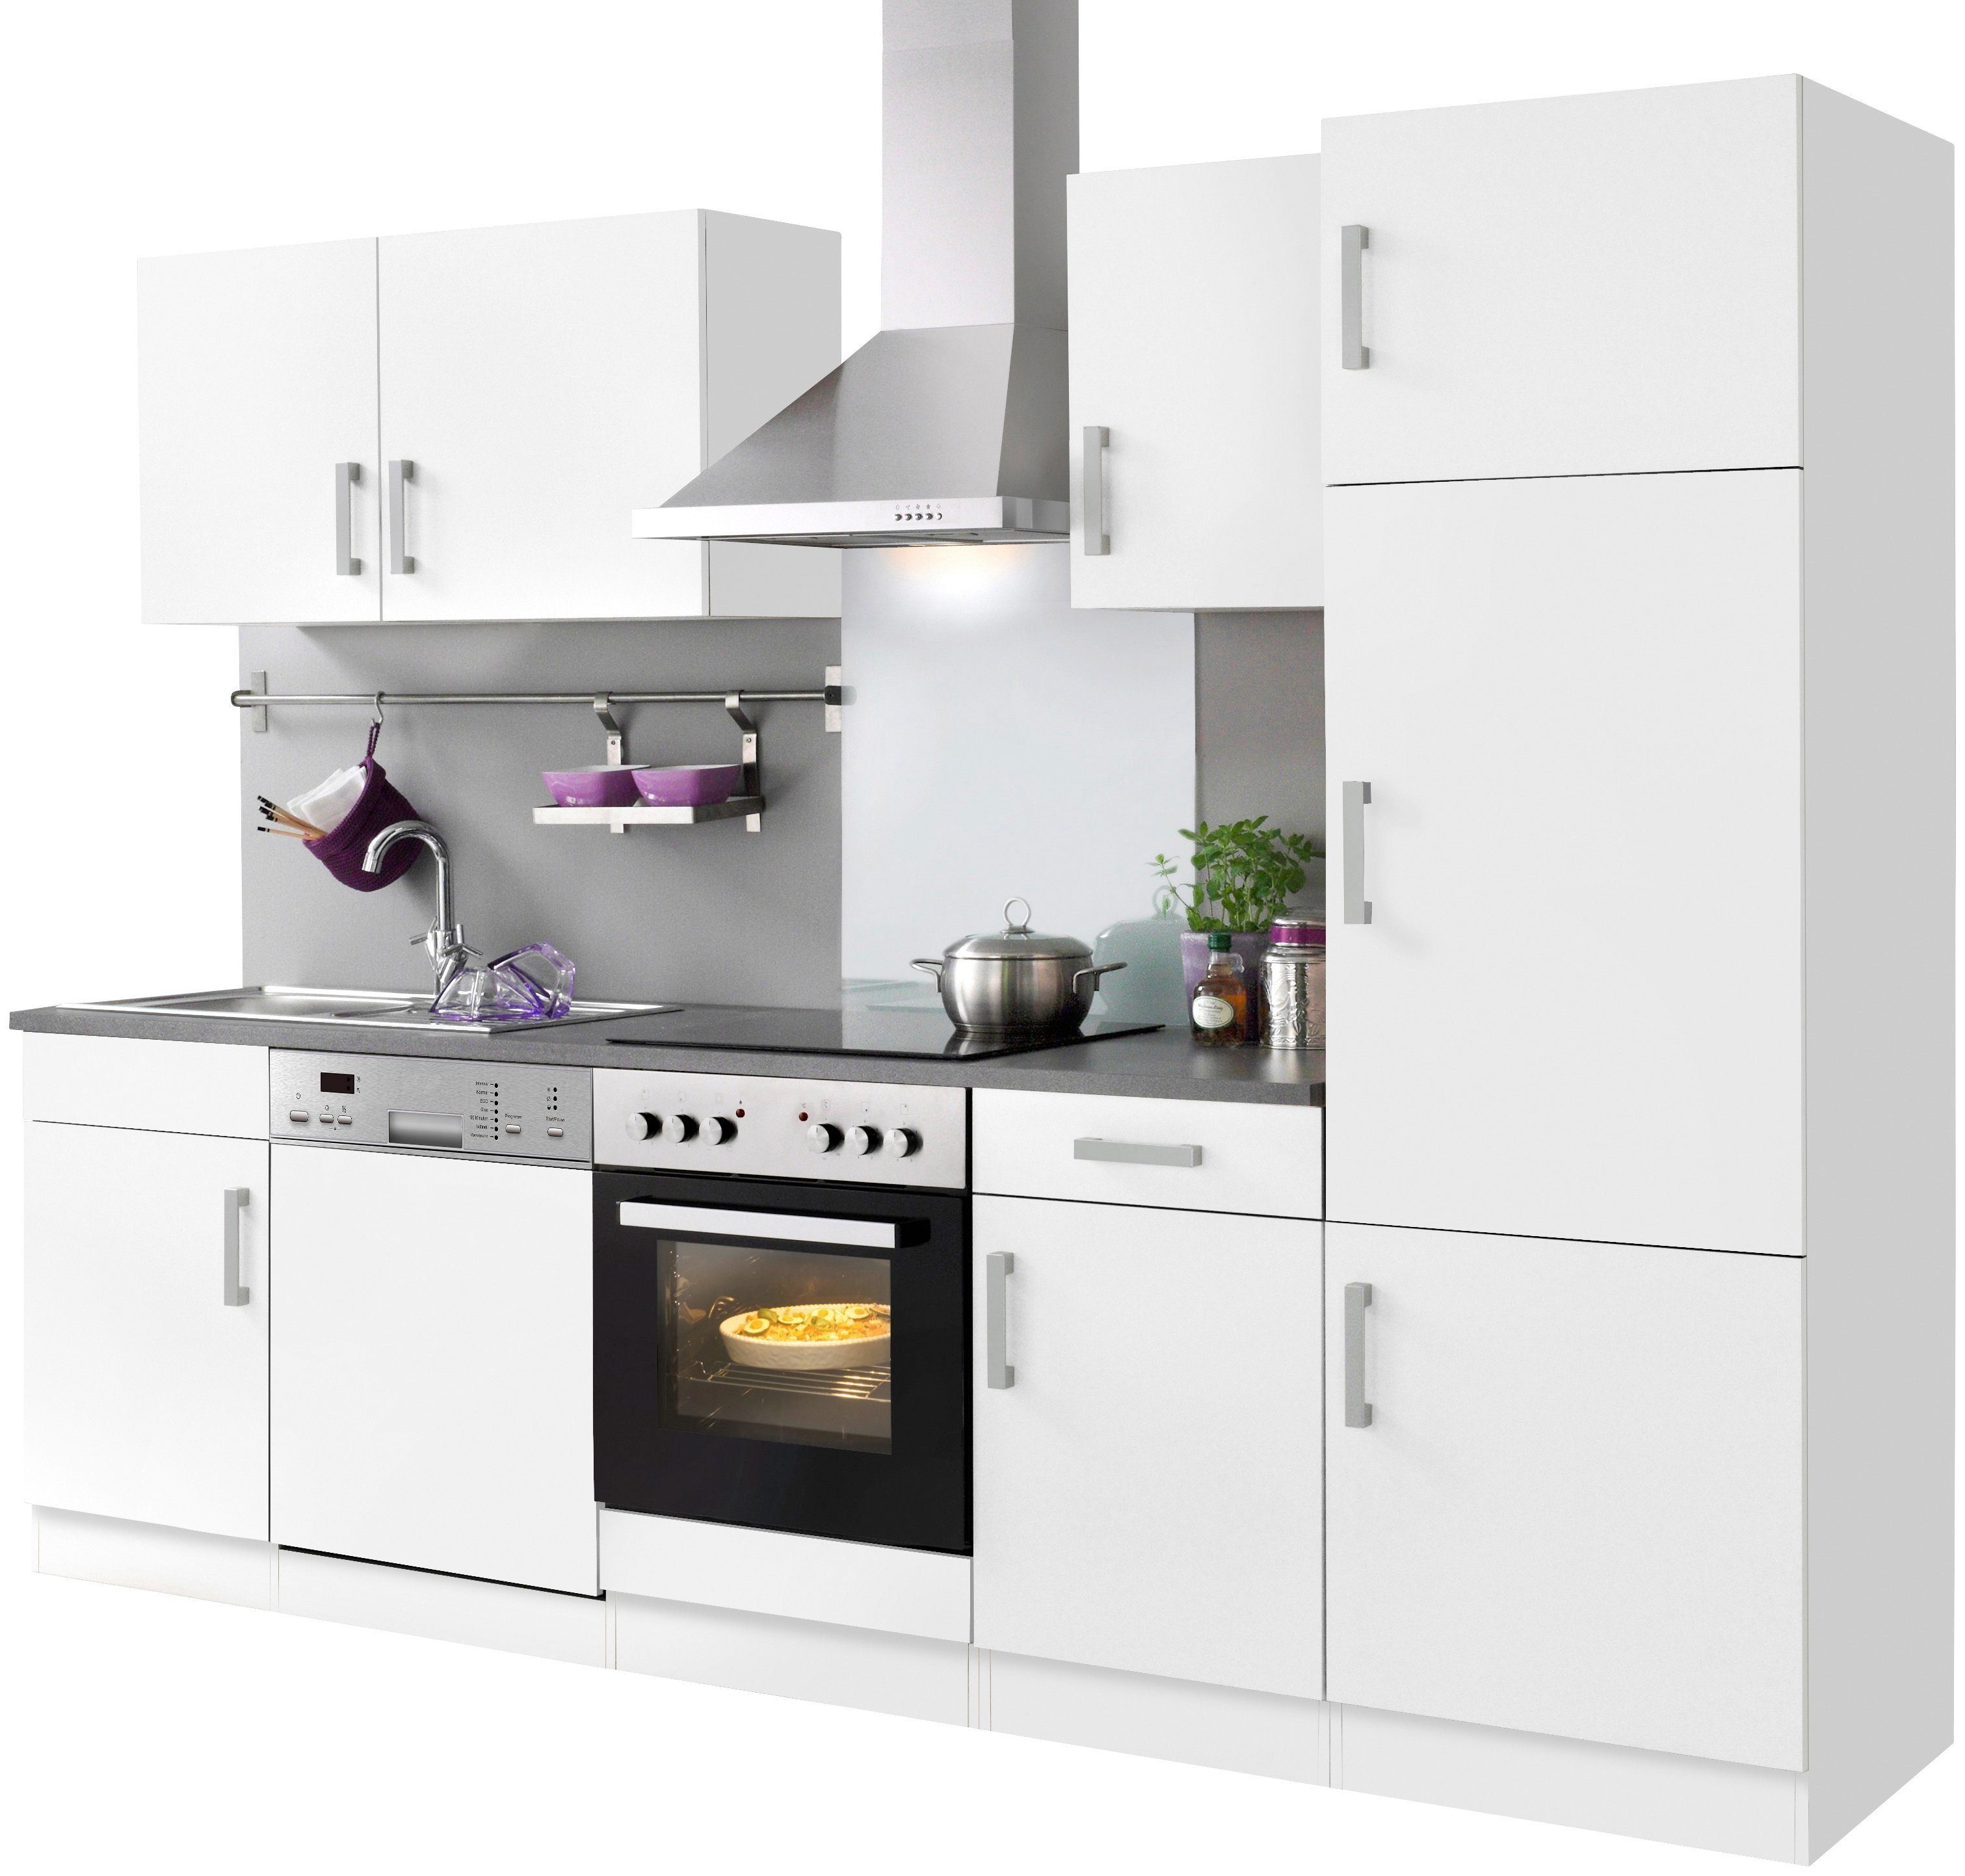 HELD MÖBEL Küchenzeile Toronto, mit E-Geräten, weiß/anthrazit 280 cm Breite